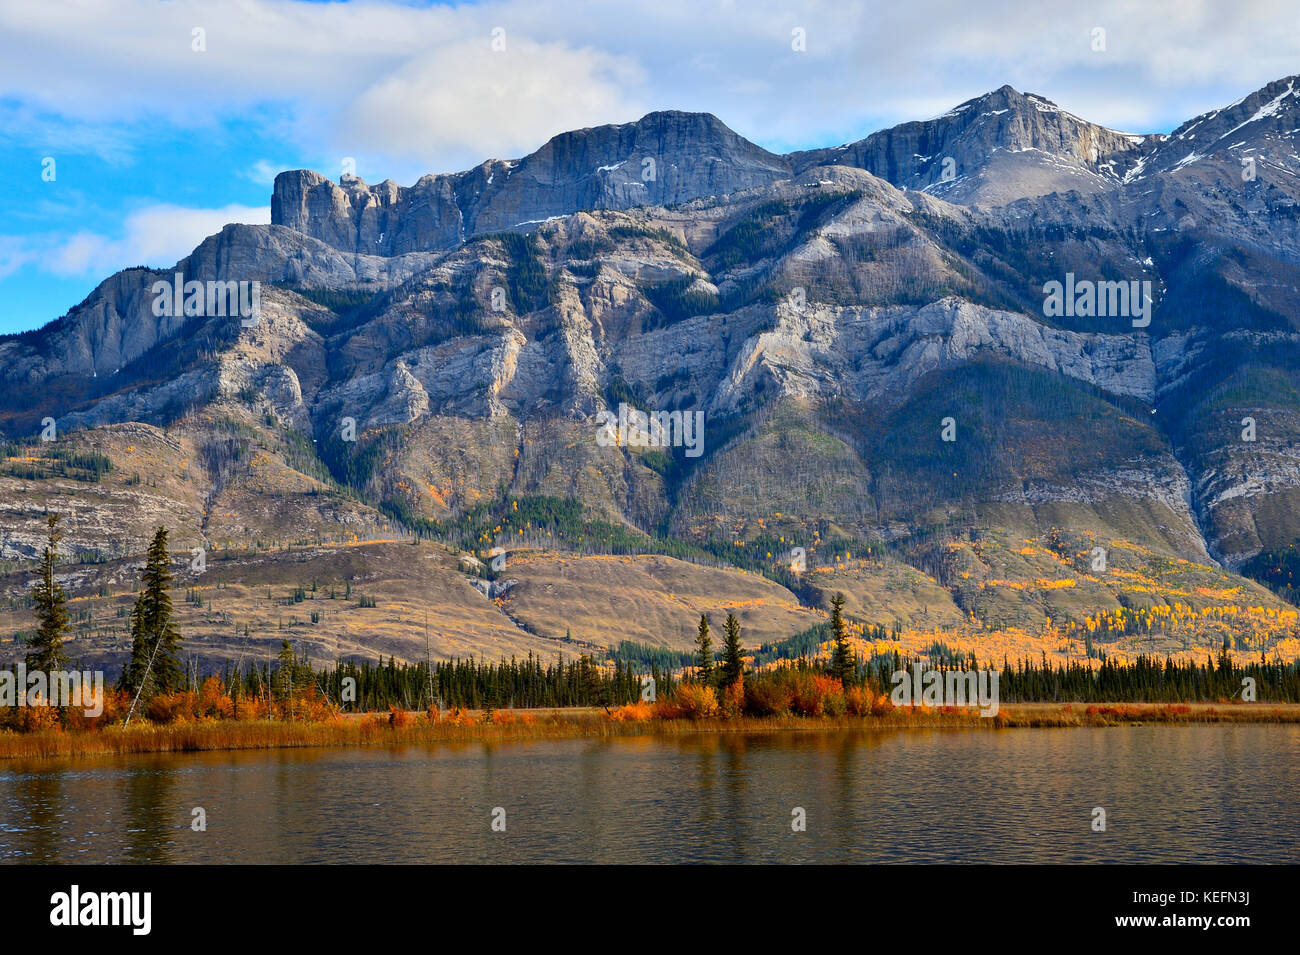 Une image de paysage d'automne montrant la chaîne de montagnes Miette dans le parc national Jasper, Alberta, Canada Banque D'Images